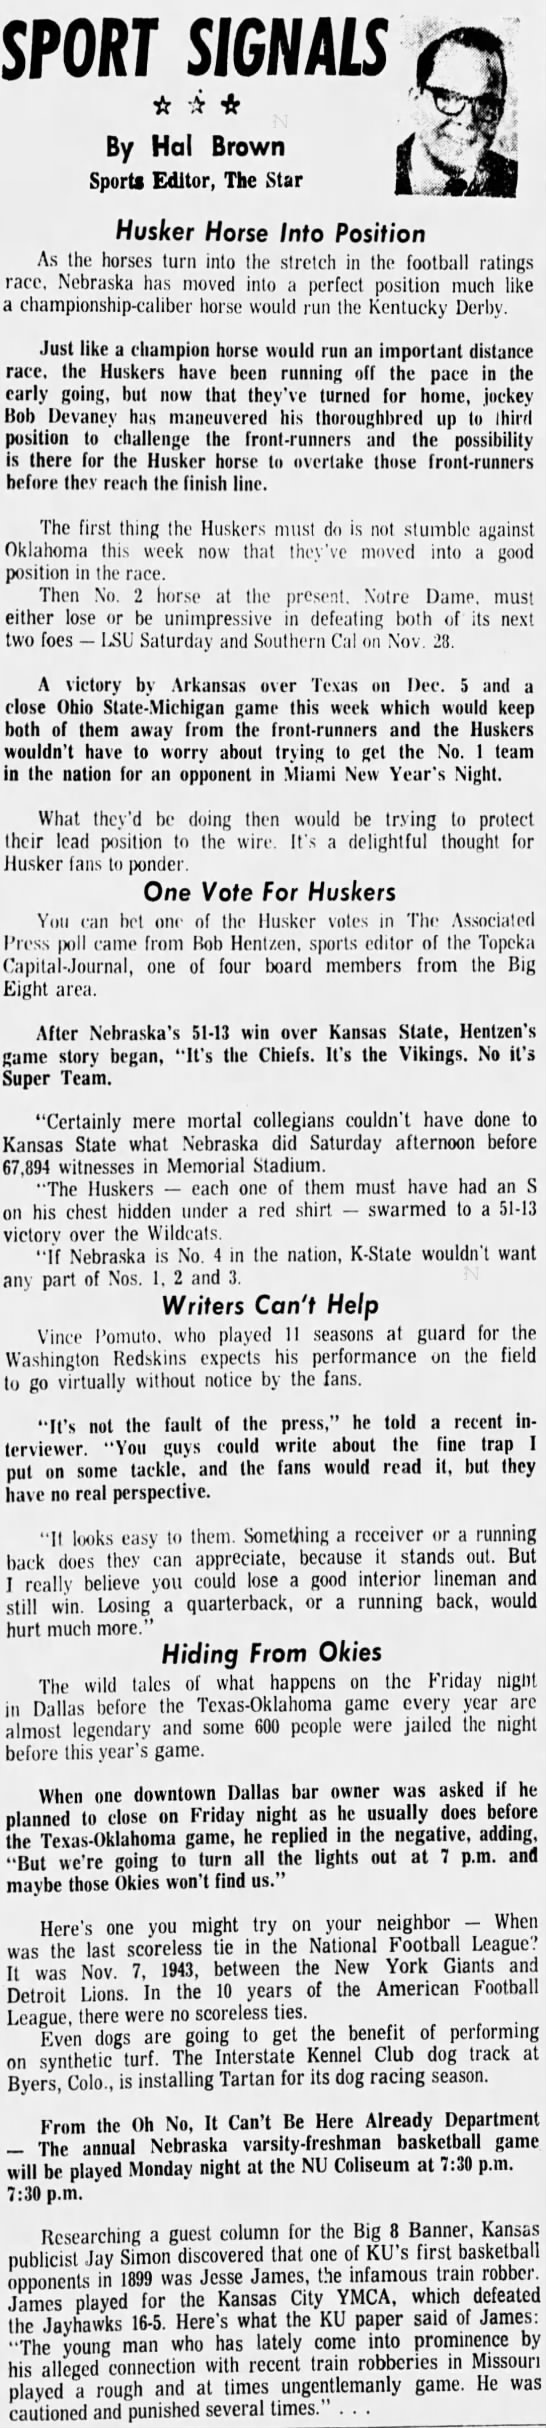 1970.11 Hal Brown column, Oklahoma week - 